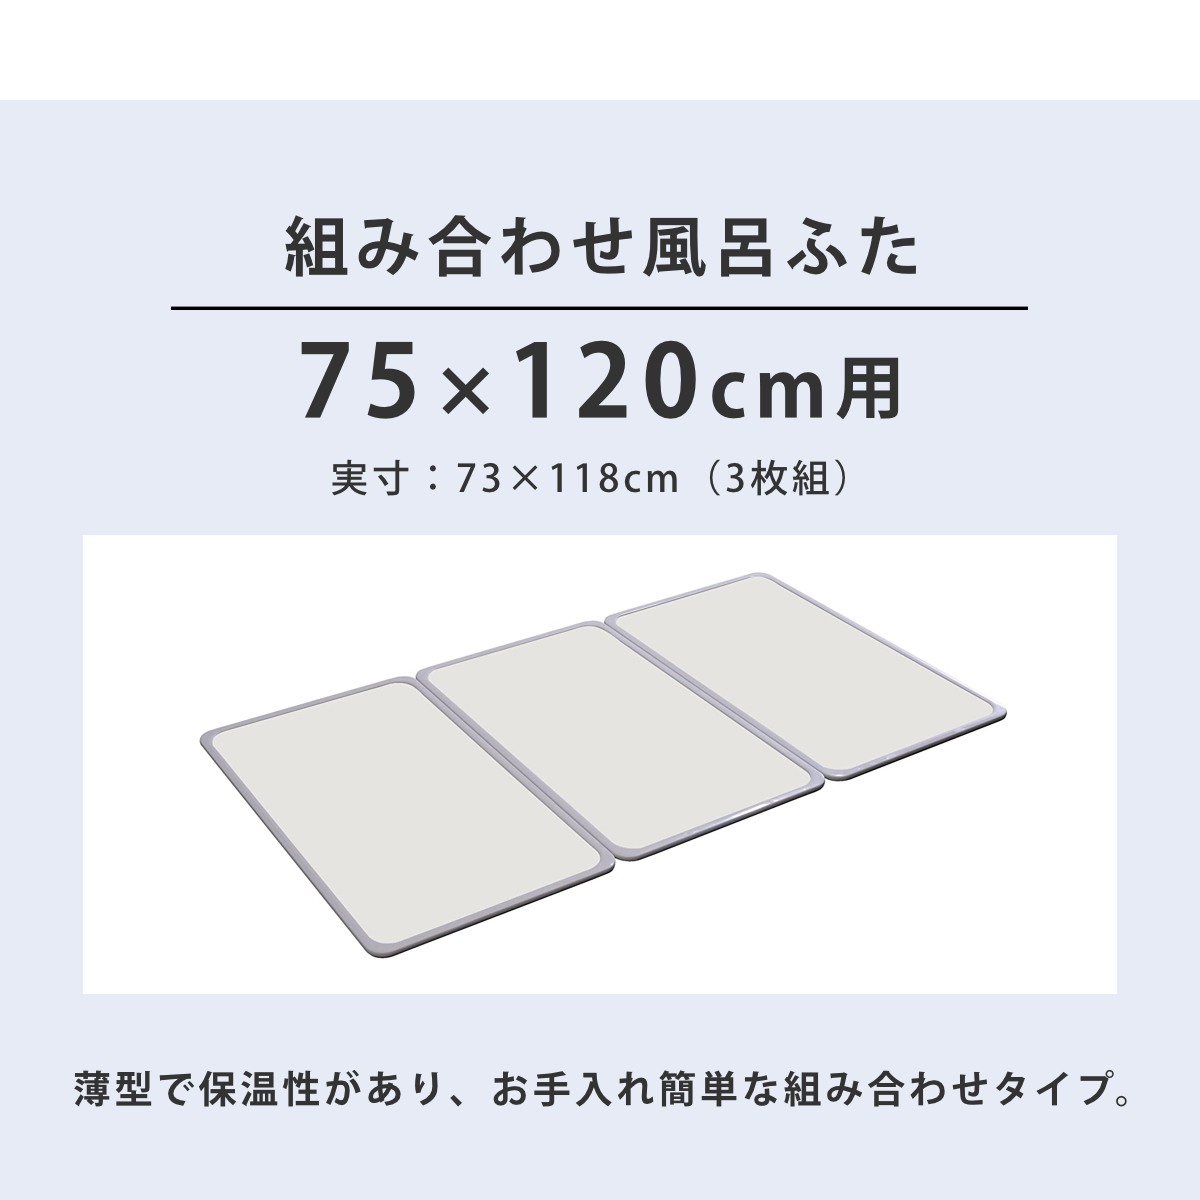 風呂ふた 組み合わせ 75×120cm 用 L12 3枚組 日本製 抗菌 実寸73×118cm